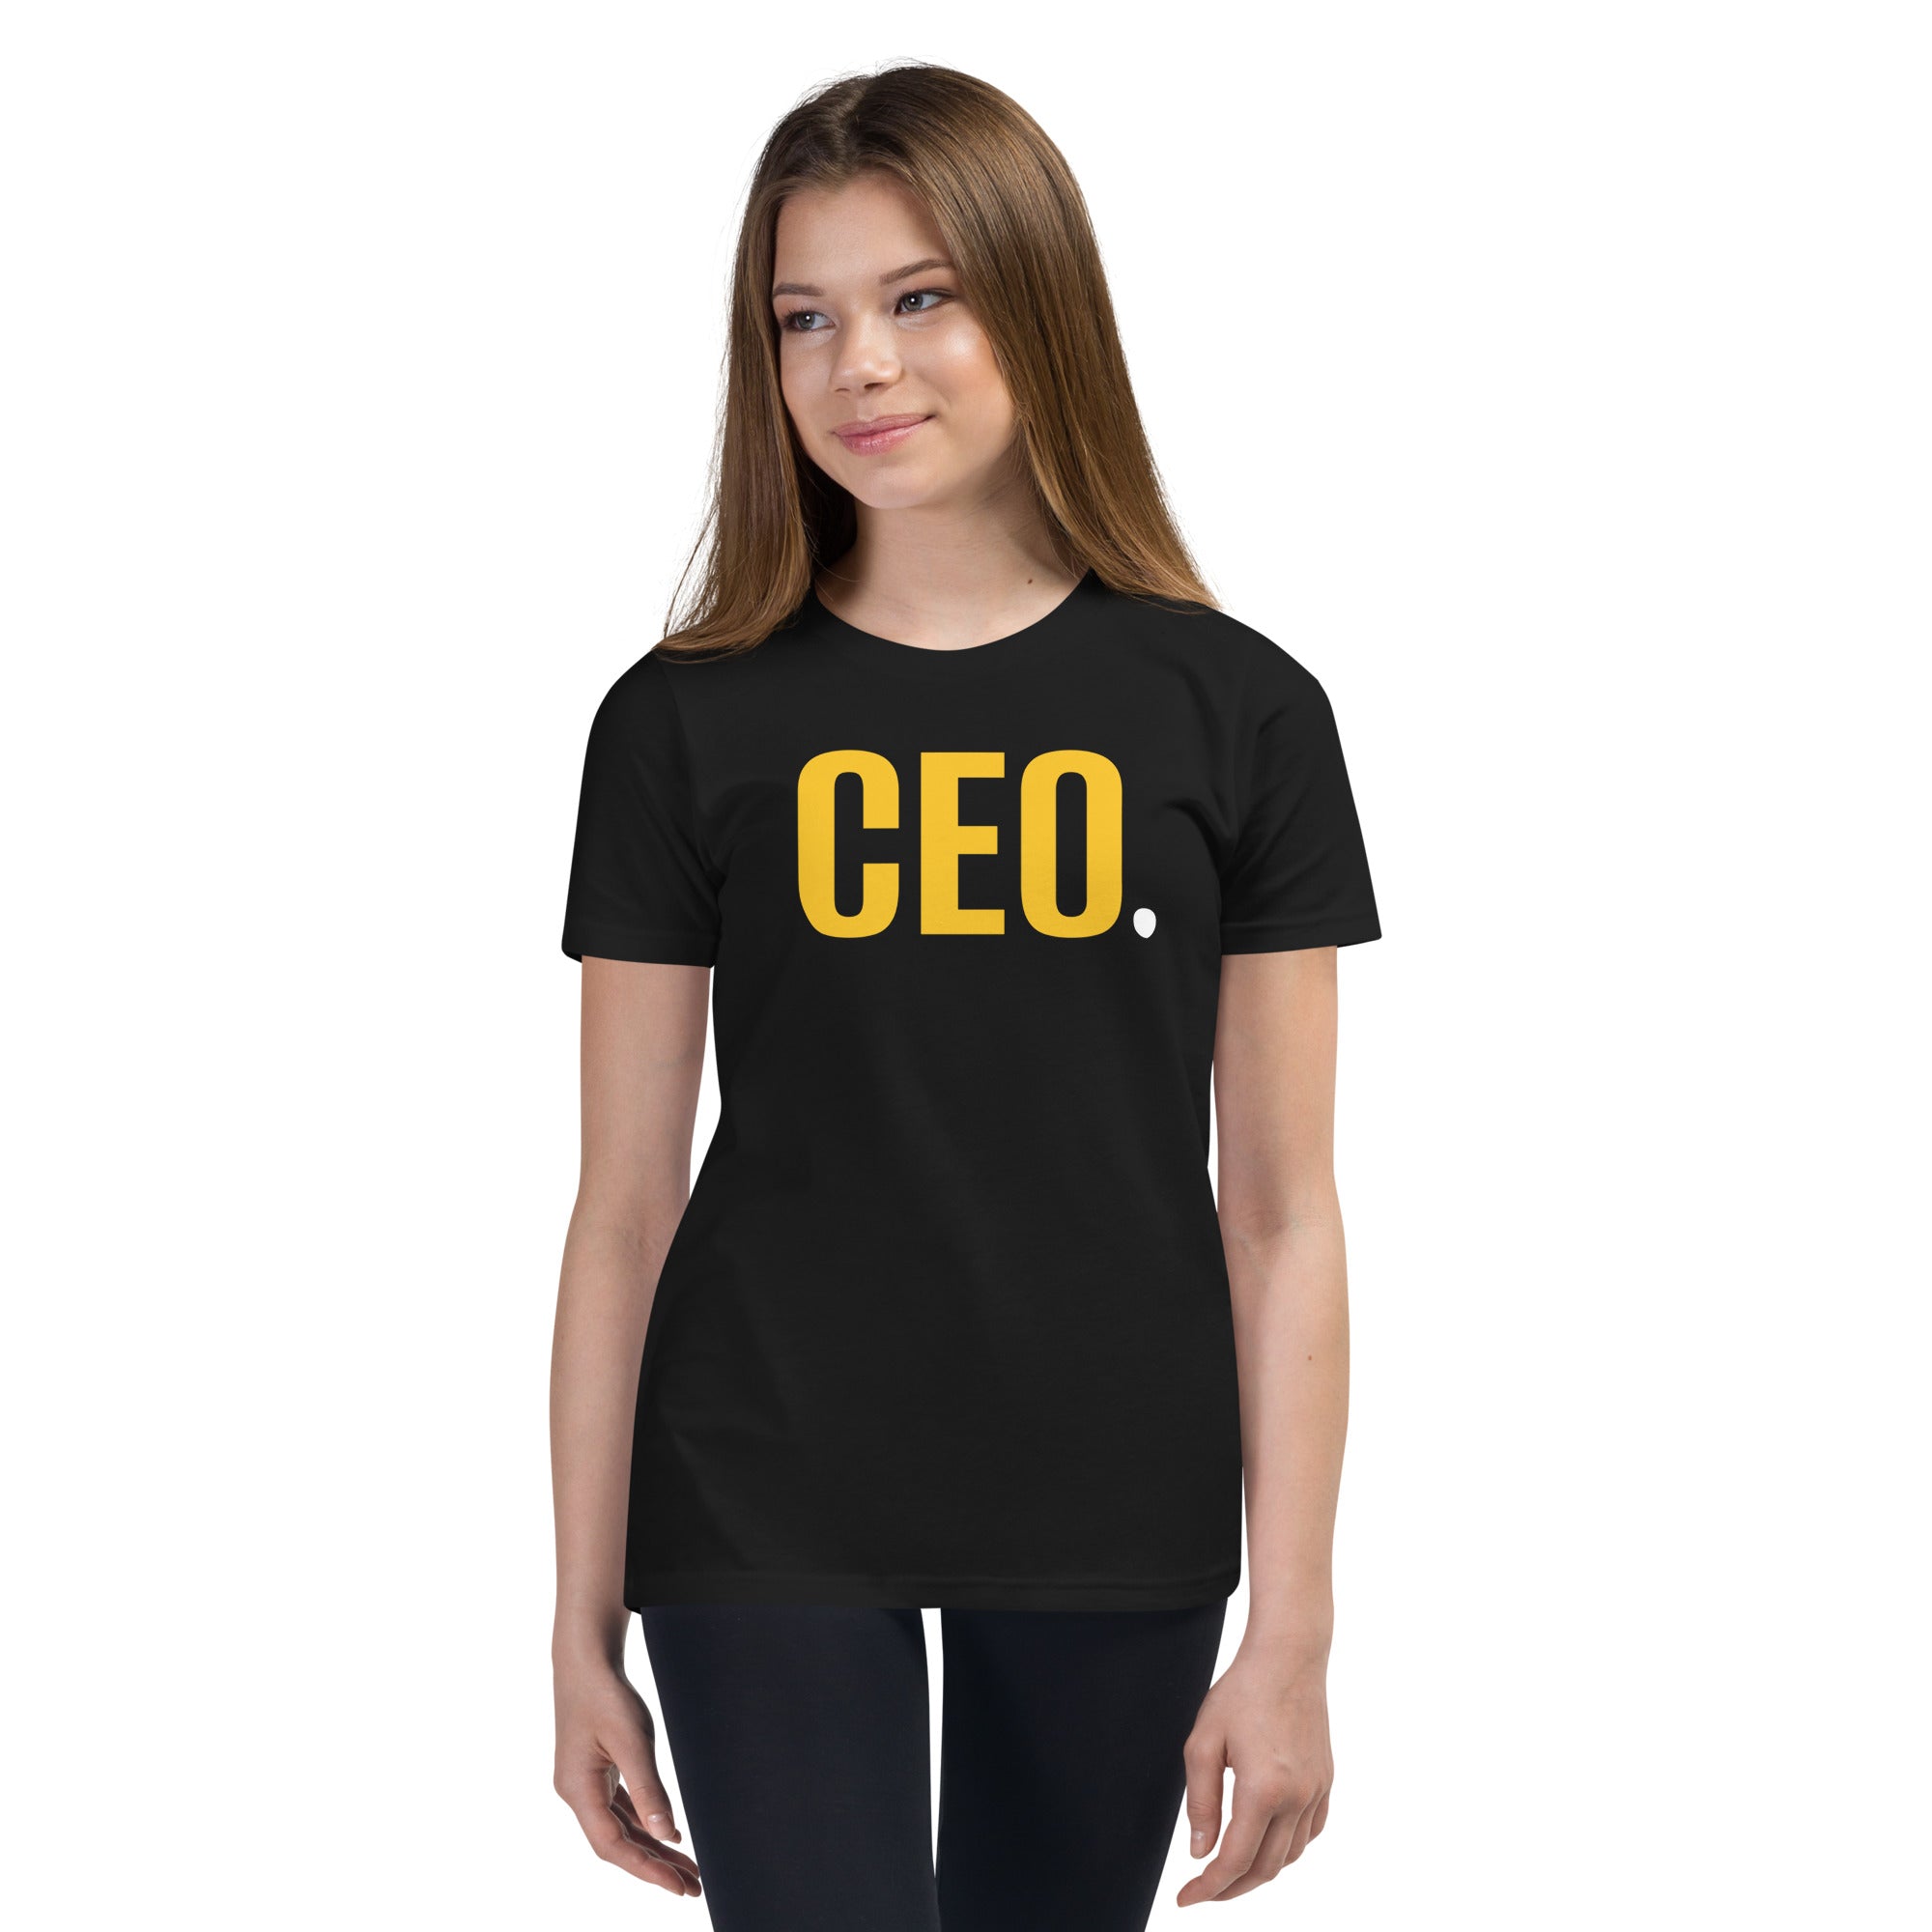 CEO.